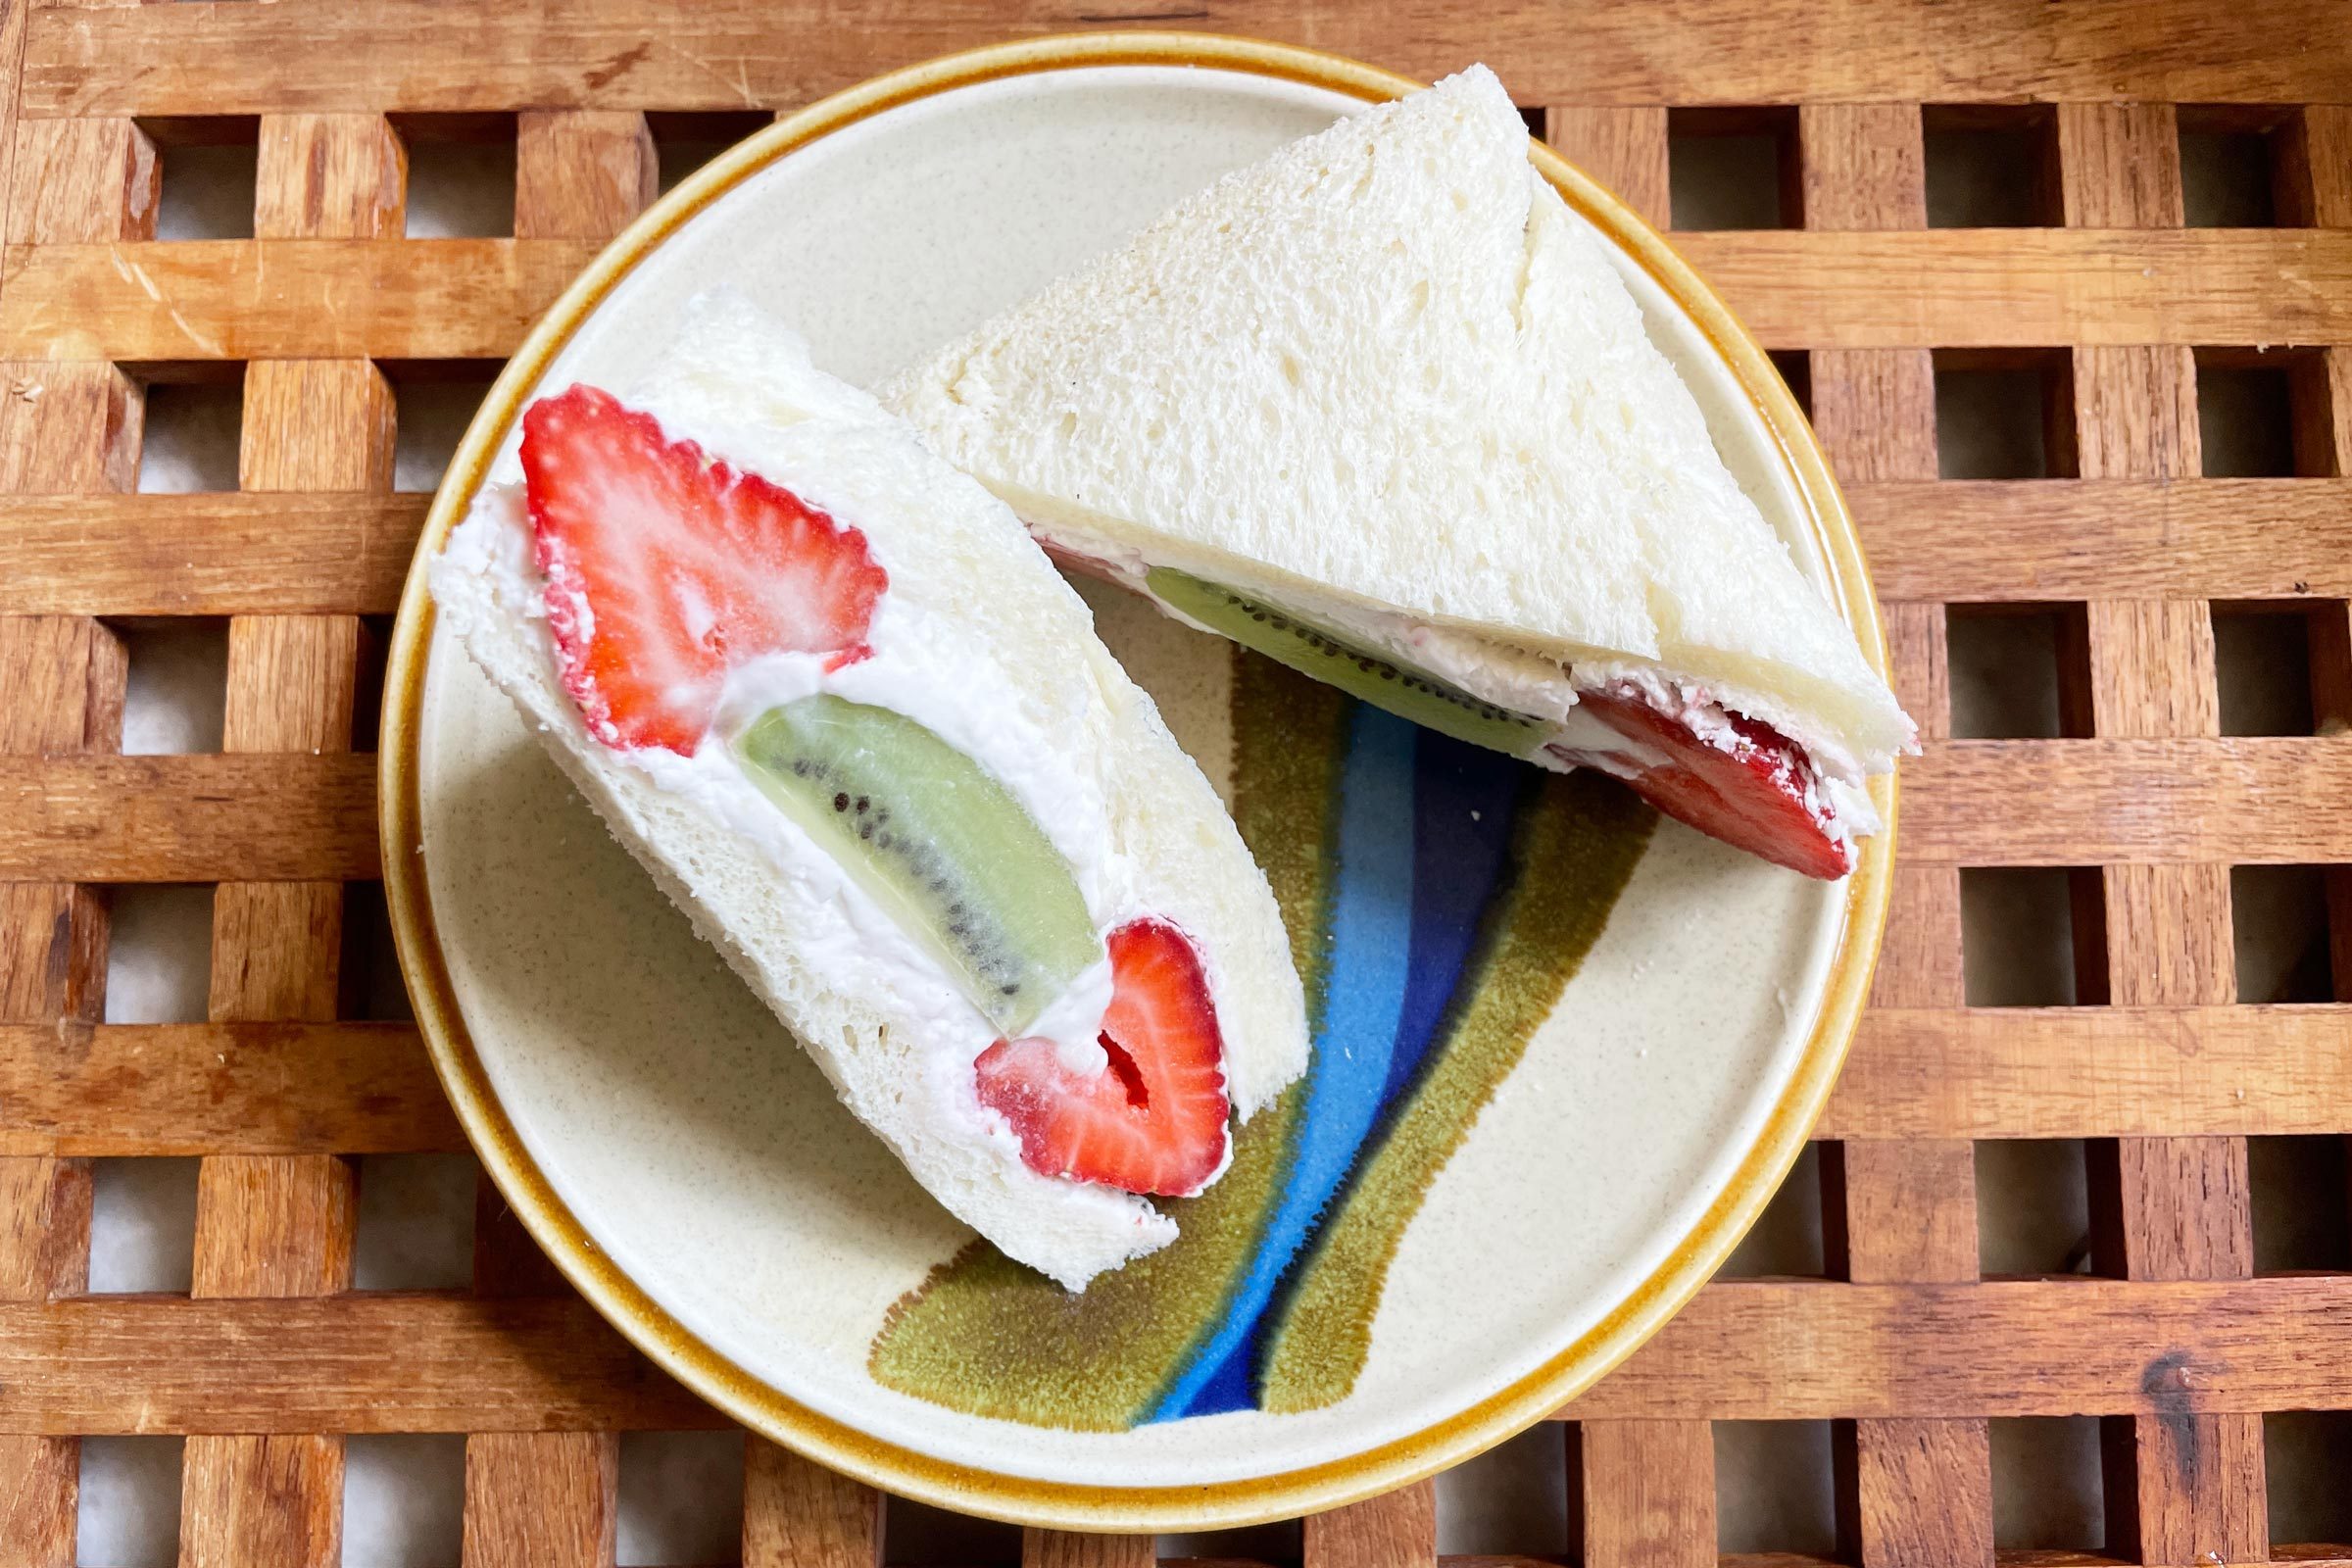 https://www.tasteofhome.com/wp-content/uploads/2022/08/Fruit-sandwich-fruitsando-FT-Megan-Barrie-for-TOH-JVedit.jpg